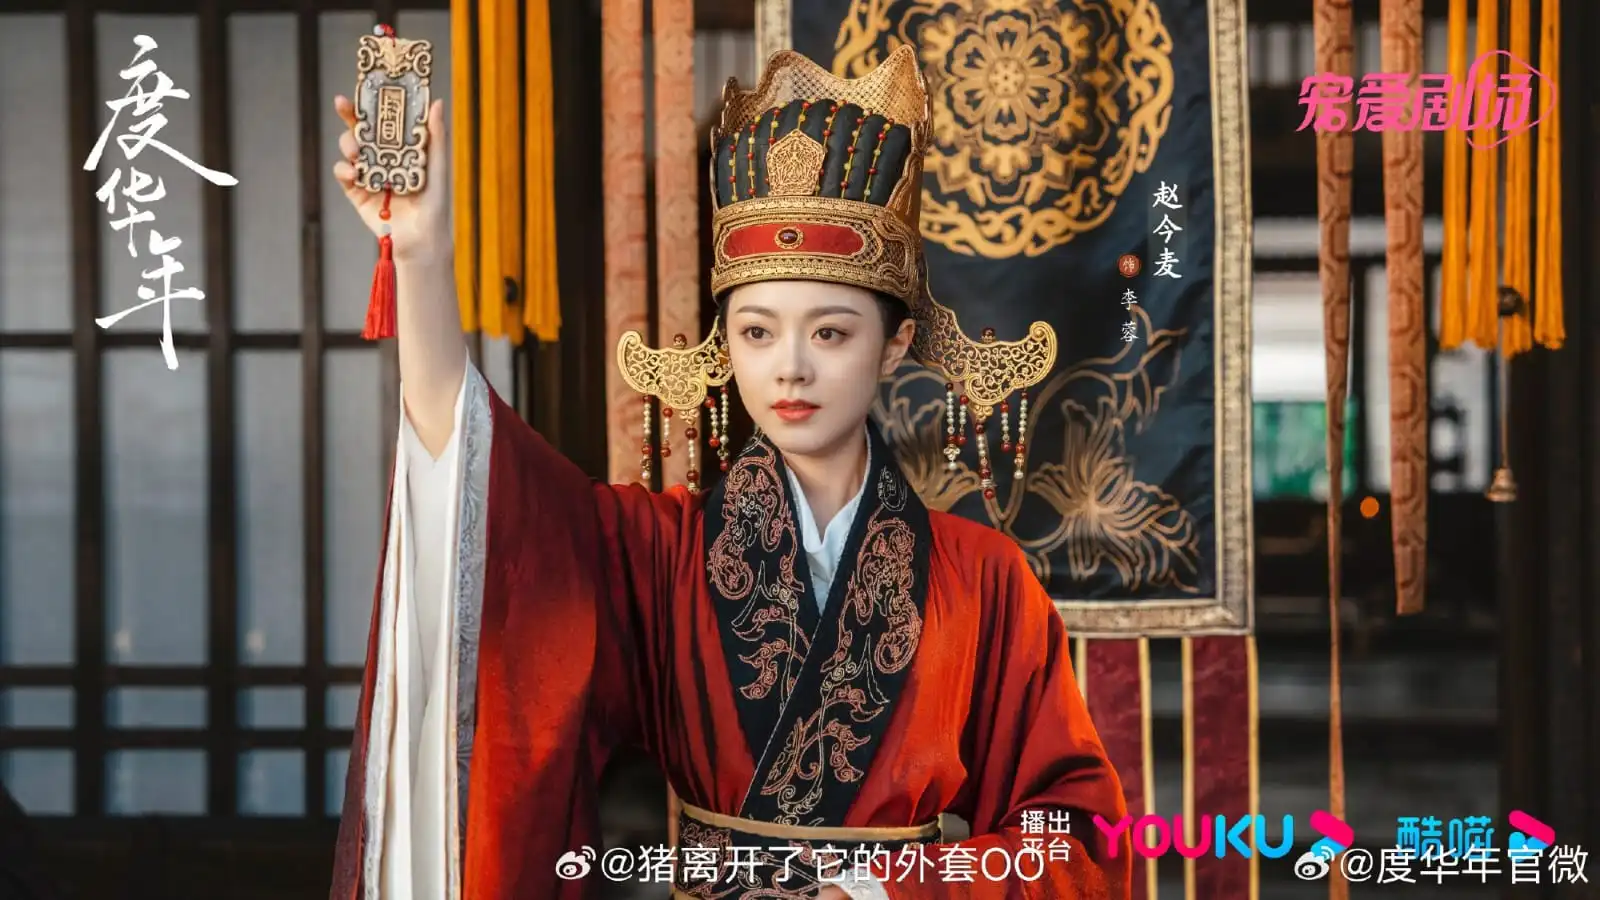 The Princess Royal Posters Tease Zhao Jin Mai & Zhang Ling He's ...